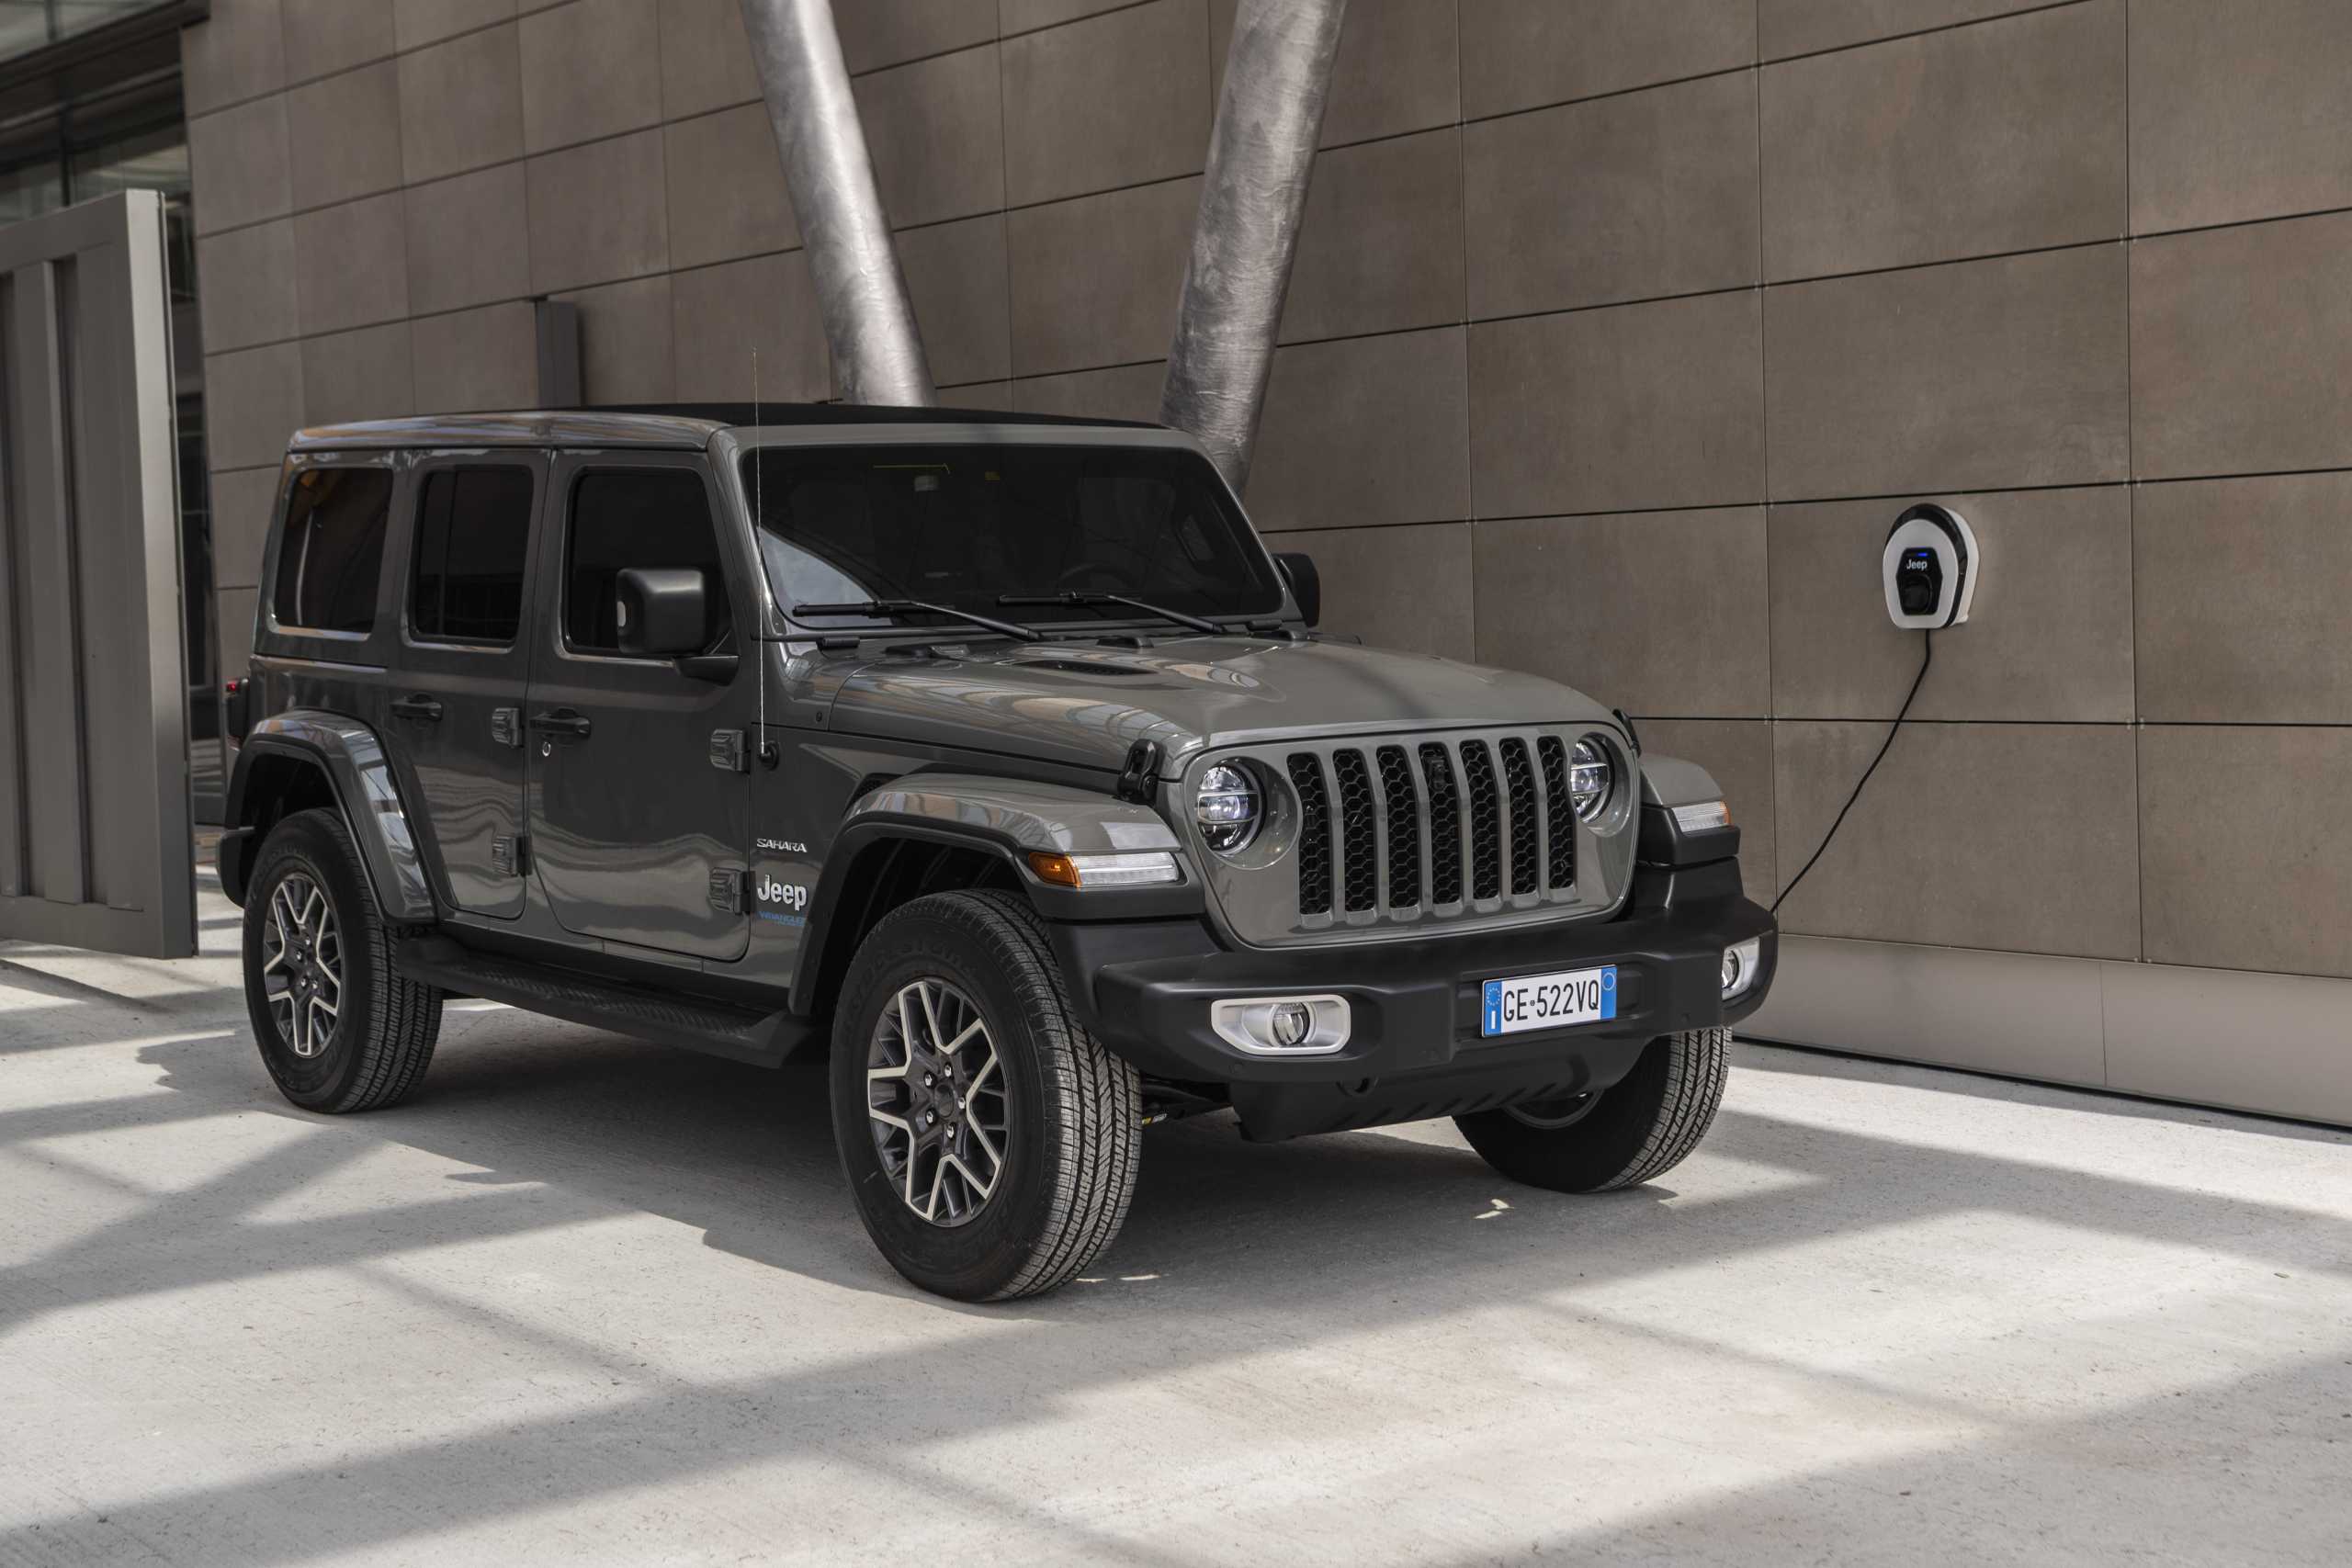 To Jeep Wrangler 4xe πρωτοστατεί στις δοκιμές των τεχνολογιών συνδεσιμότητας 5G για την οδική ασφάλεια